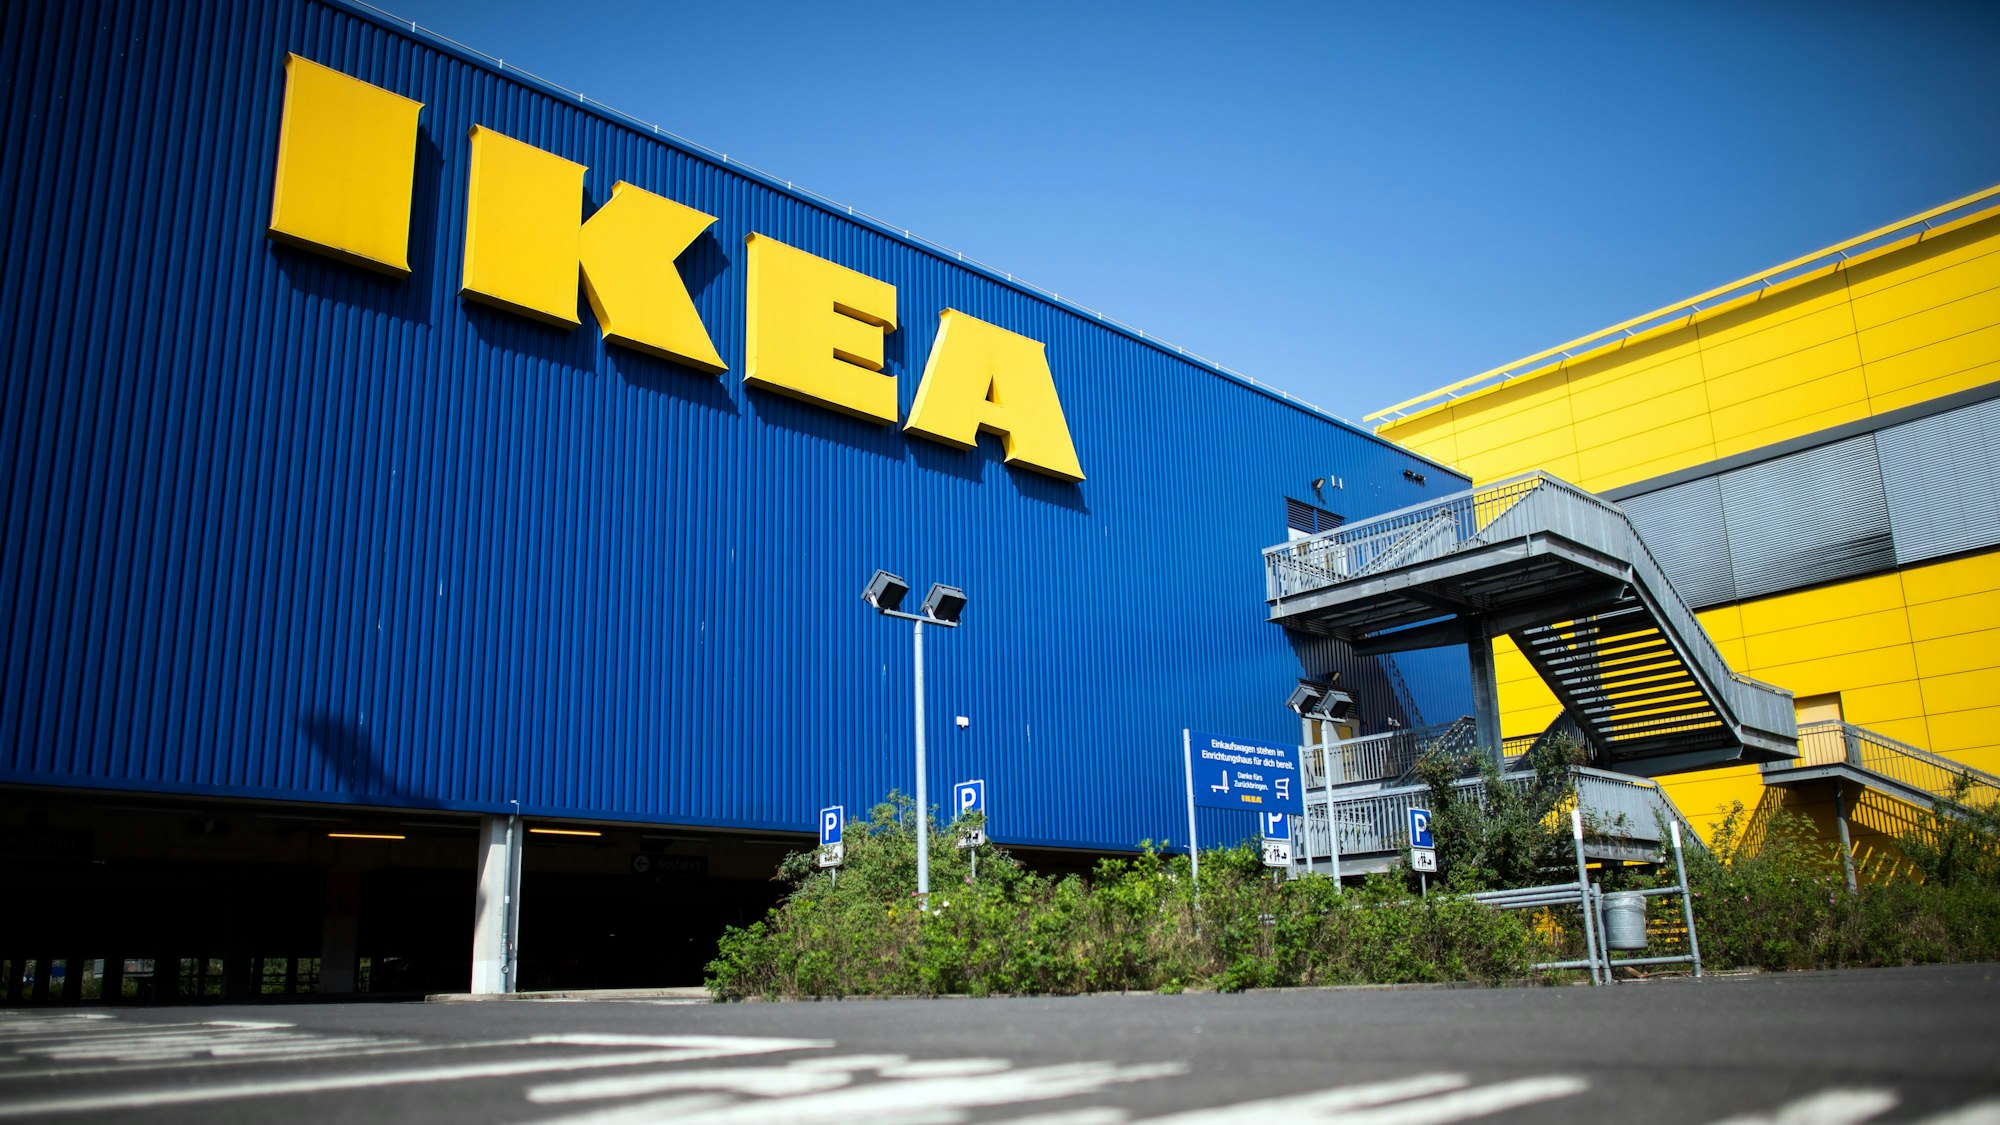 Das Foto (aufgenommen am 17. April 2020) zeigt ein Ikea-Einrichtungshaus von außen.